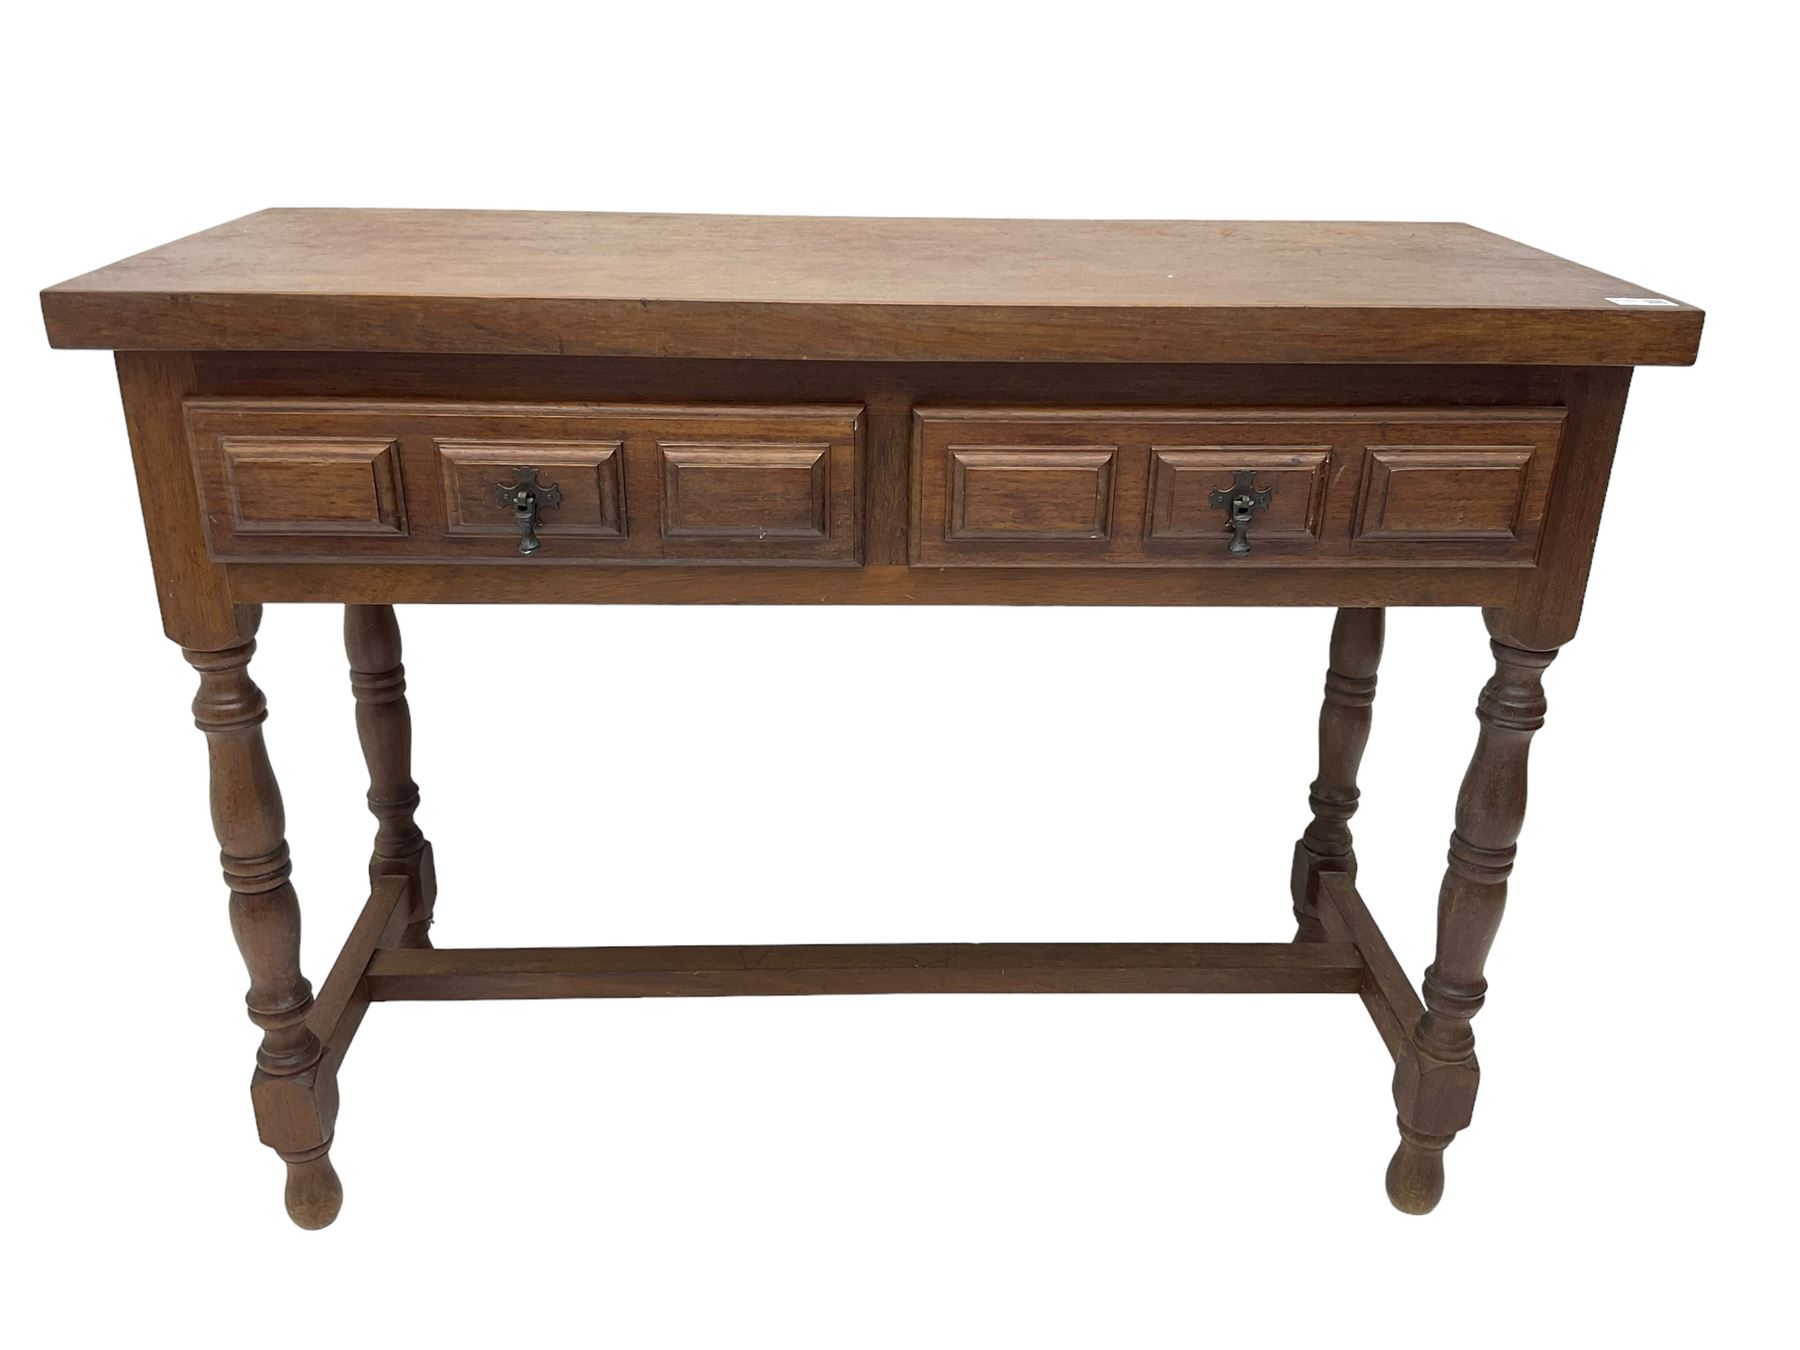 Spanish oak side table